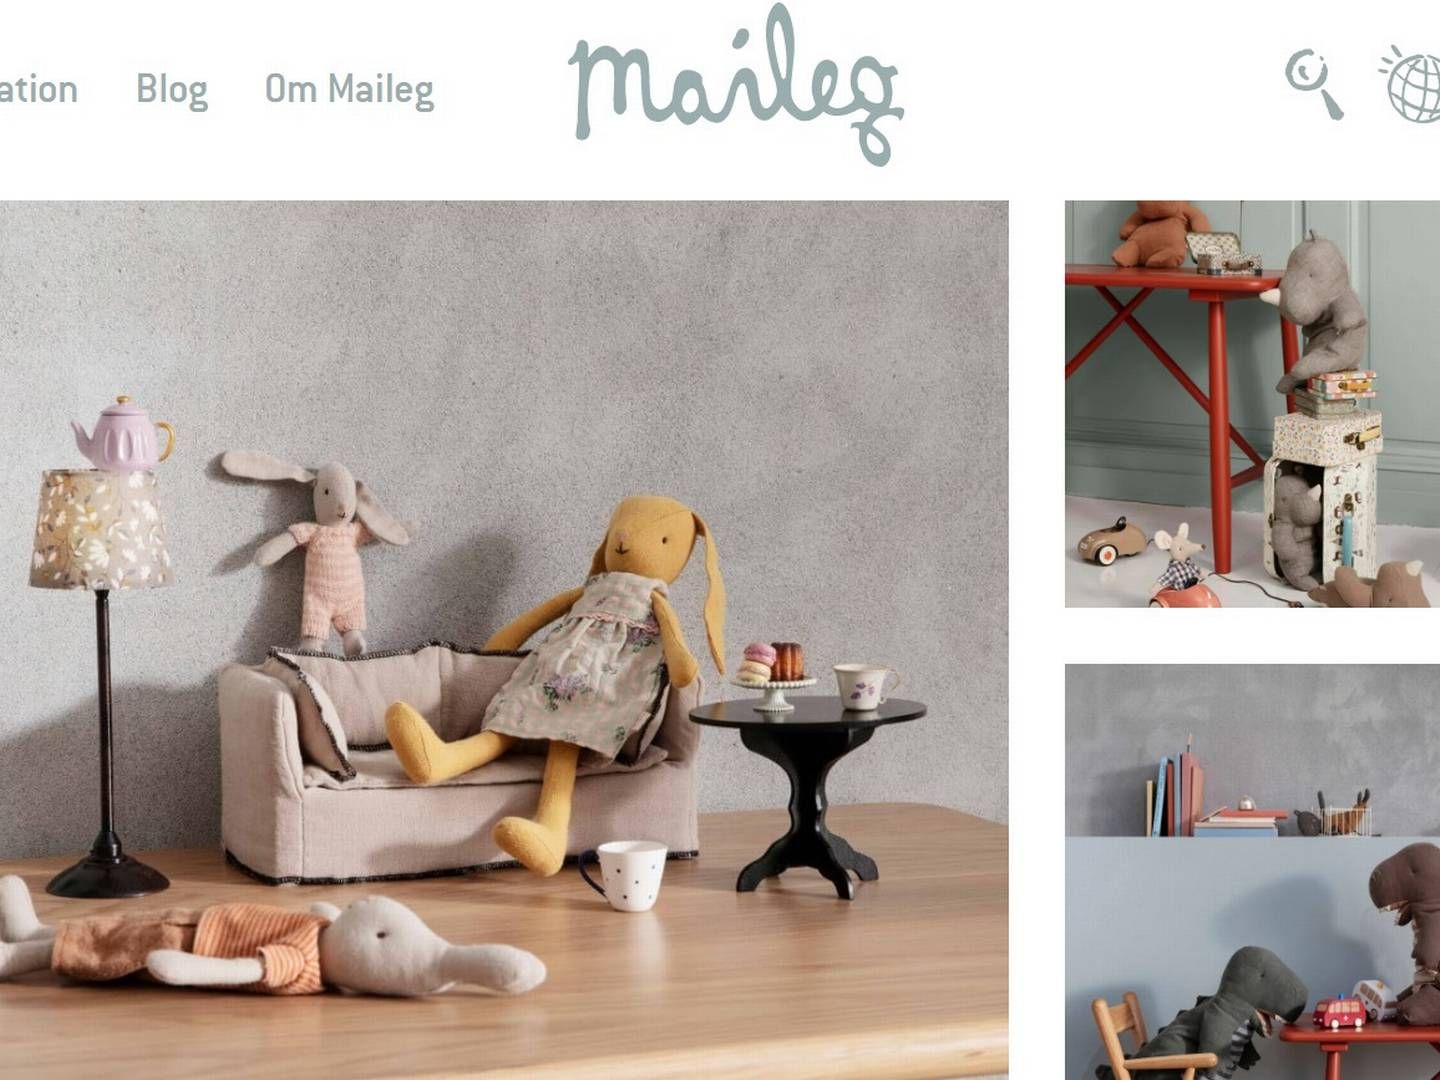 Mailegs "bamsevenner" er blevet en millionforretning med salg i 60 lande, der nu skal udvides med to kapitalfonde som majoritetsejer. | Foto: Screenshot/Maileg